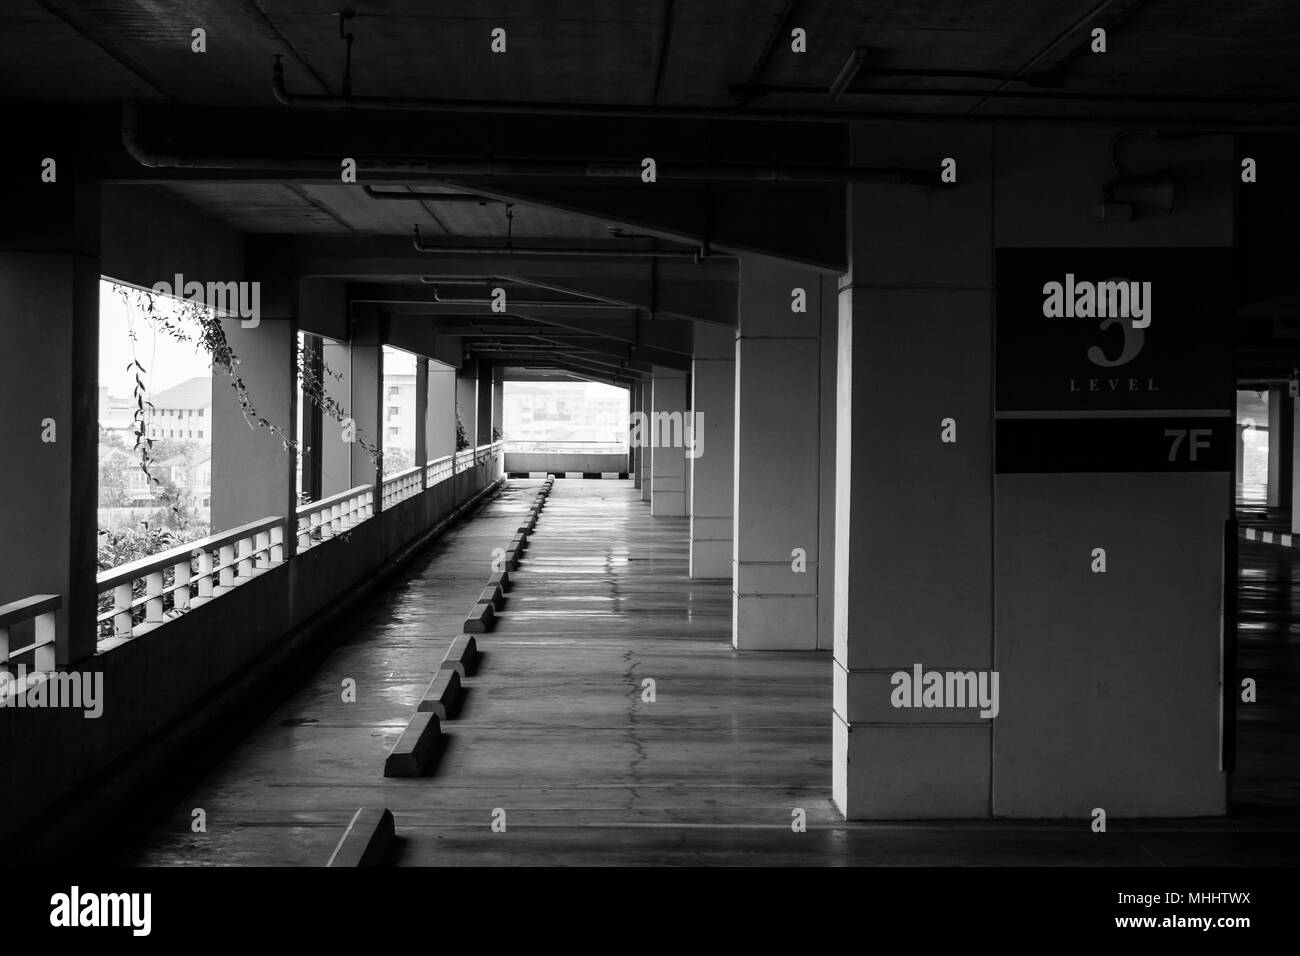 Abstract image en noir et blanc des lignes d'espace de stationnement de voiture. Banque D'Images